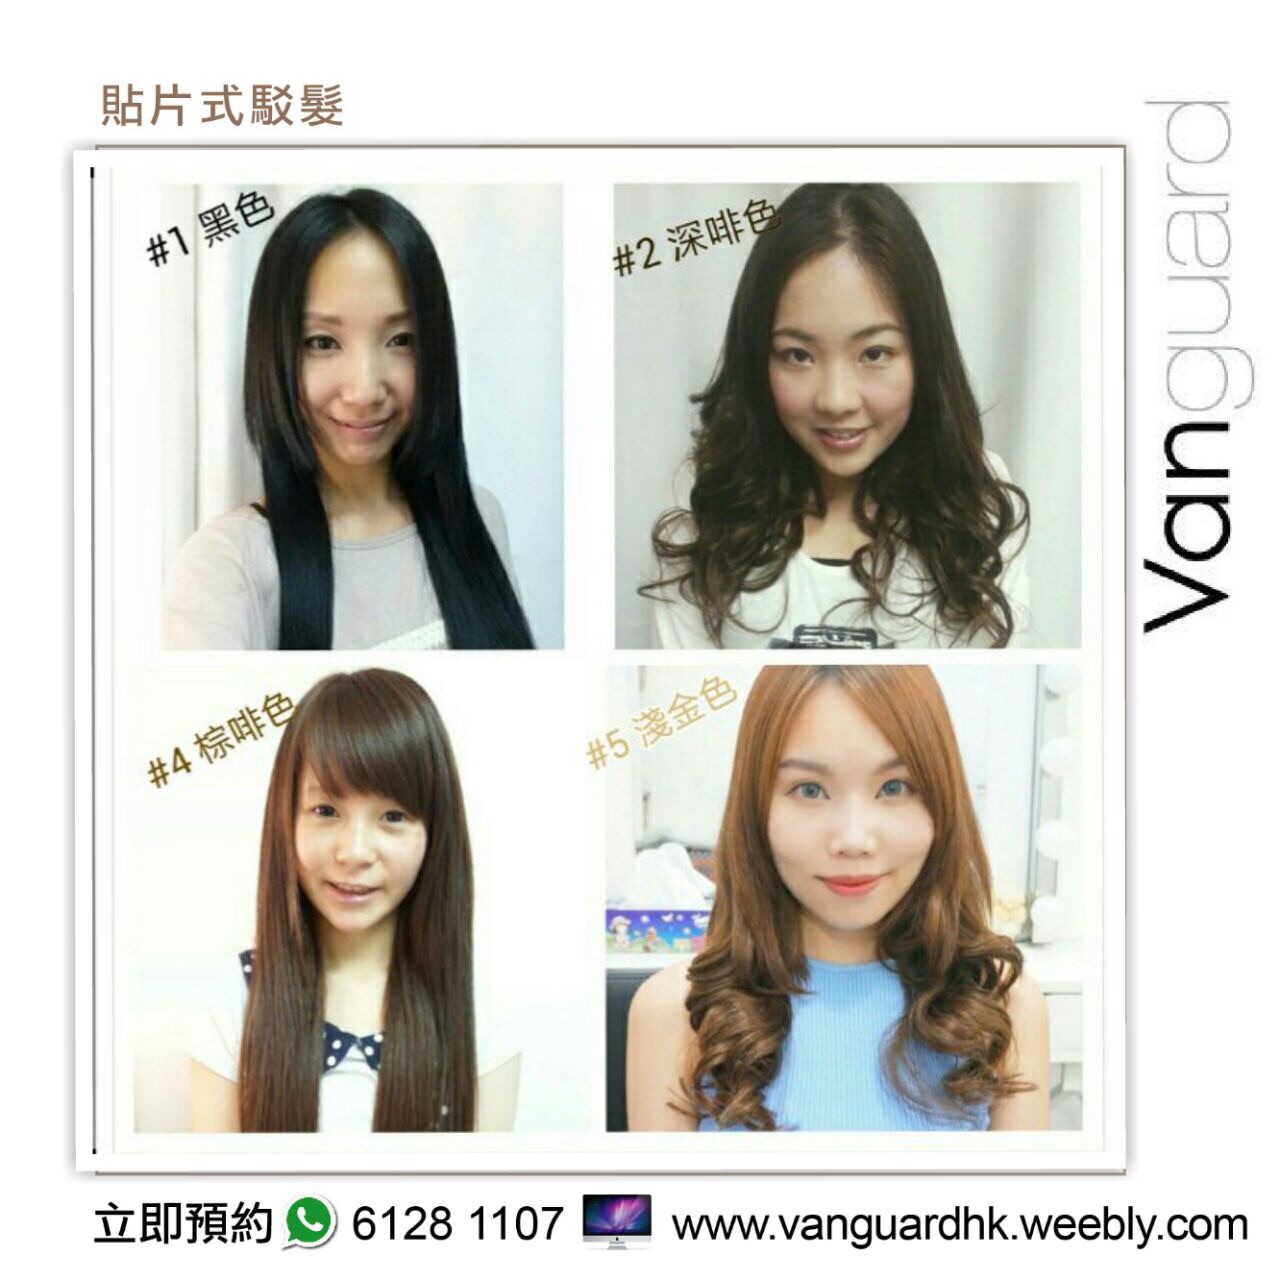 髮型屋 Salon: Vanguard HK 無痕貼片式駁髮專門店